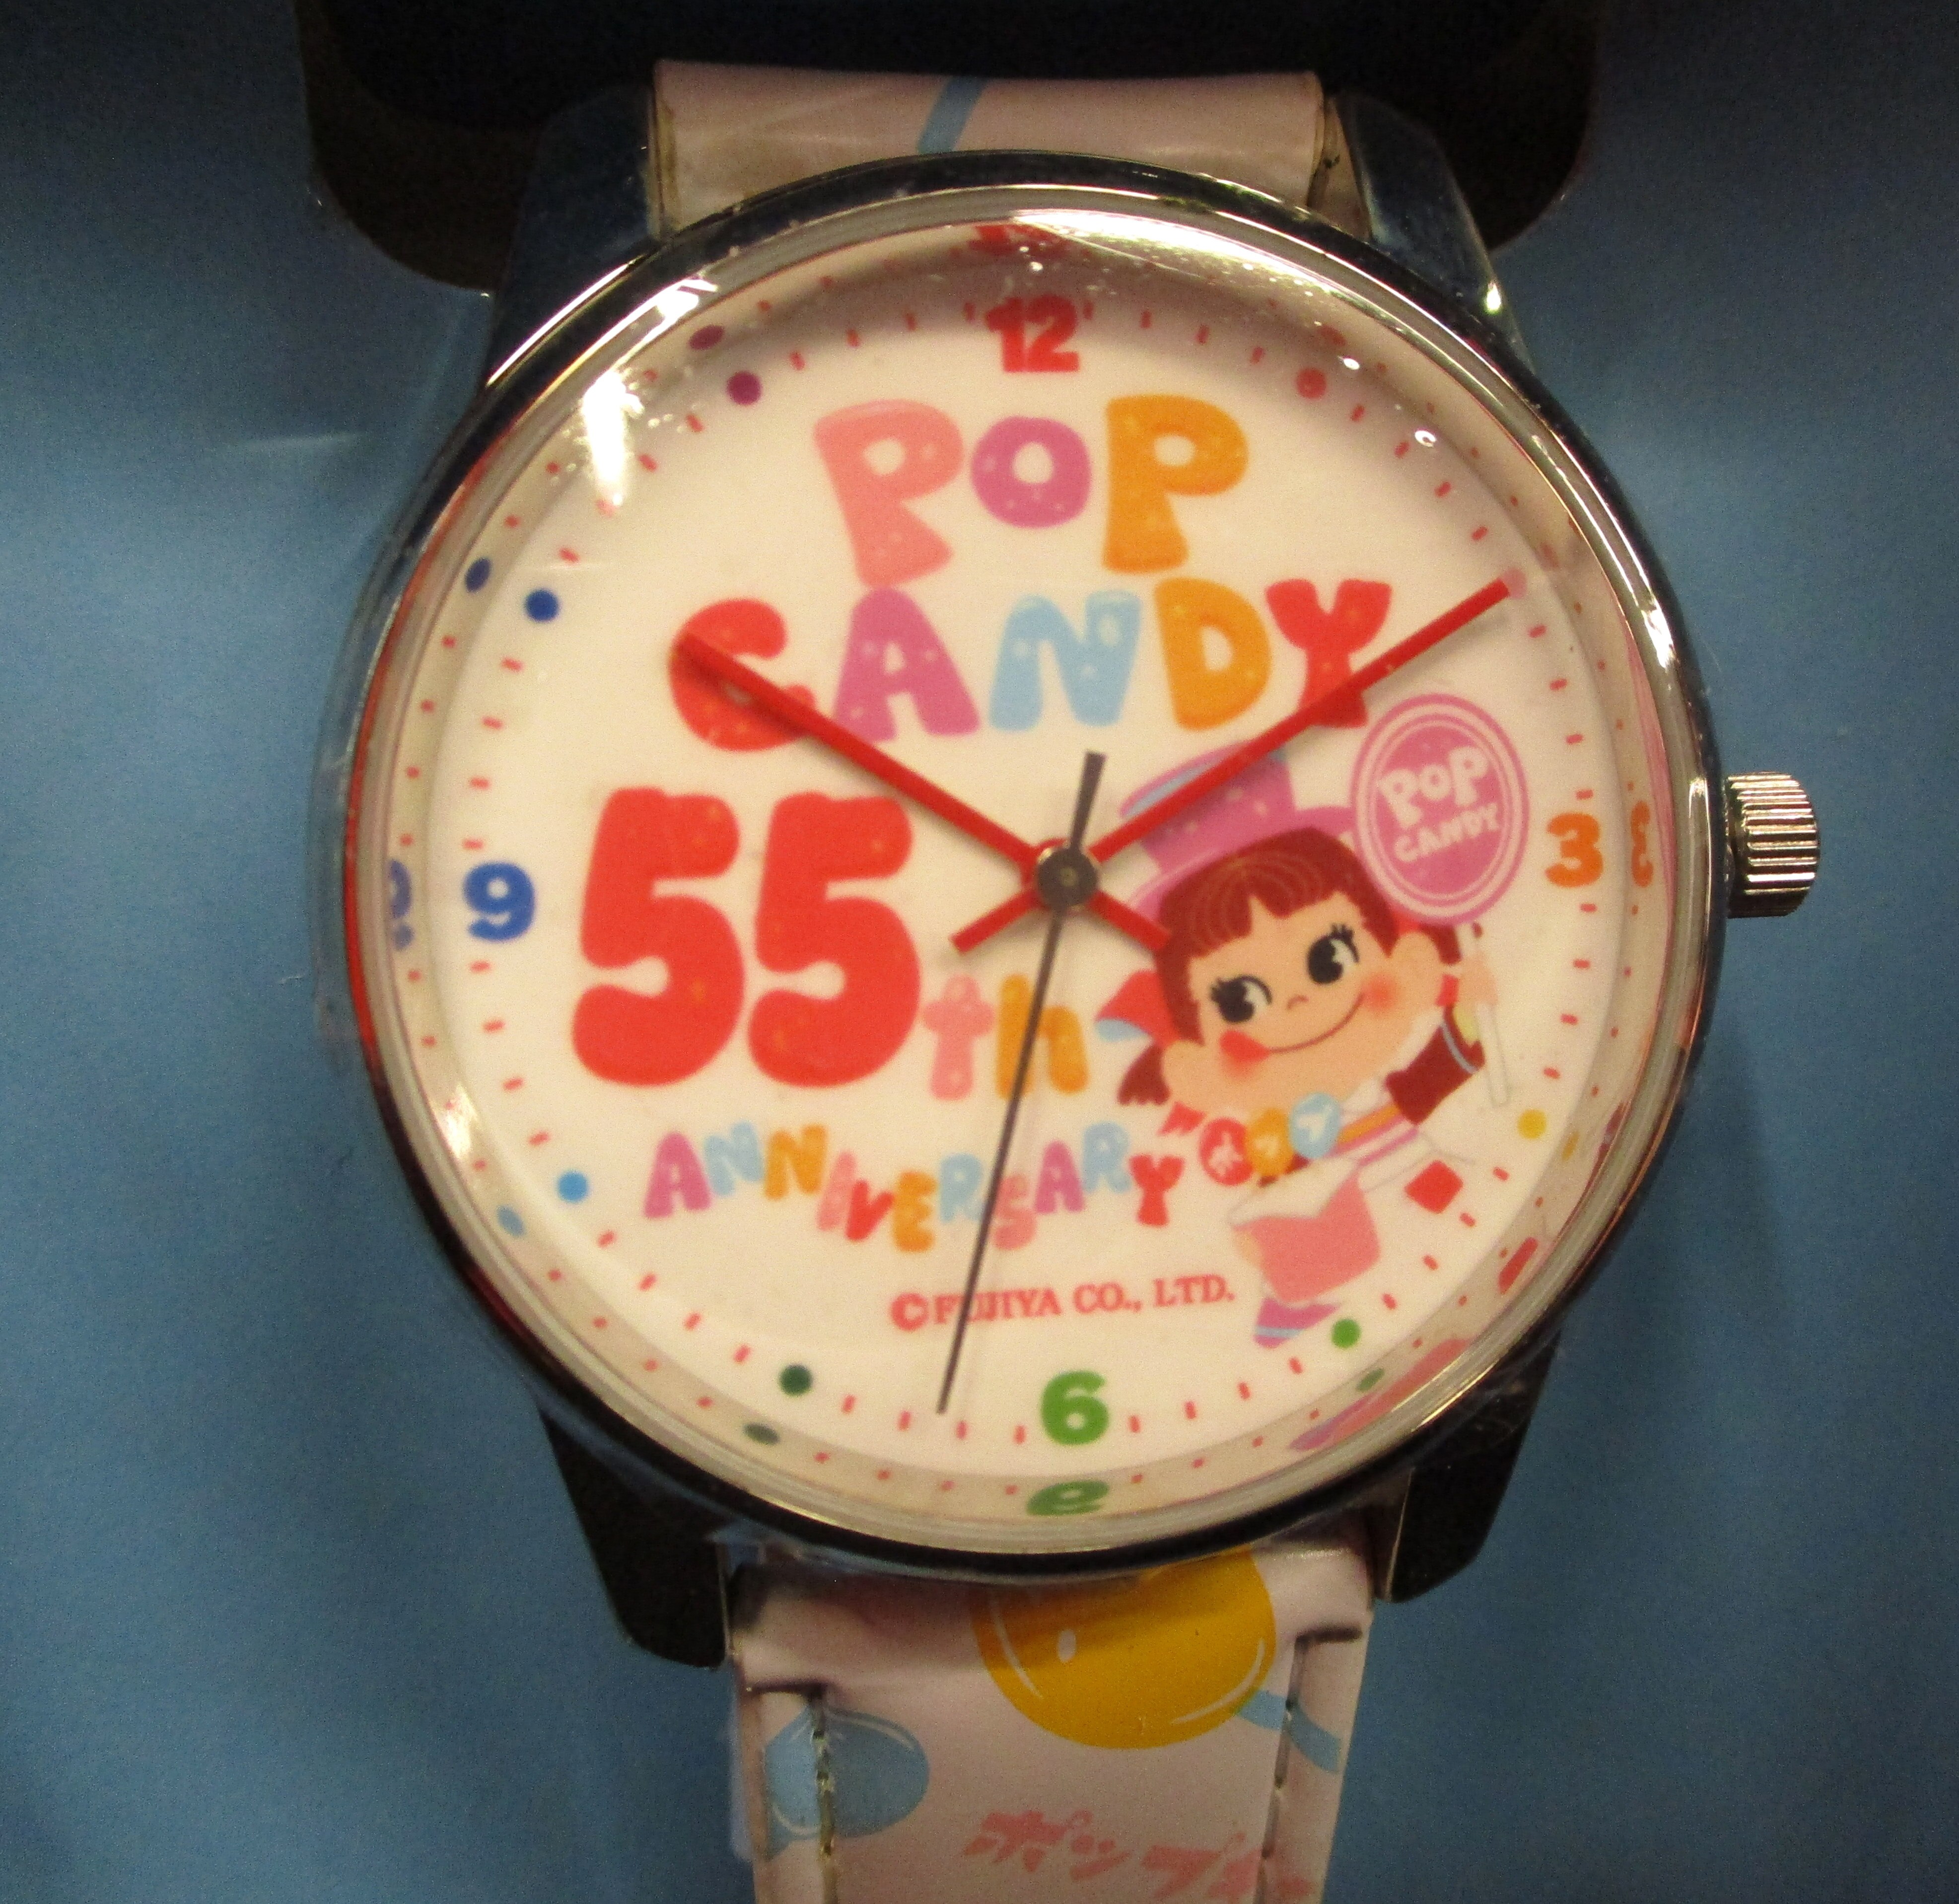 不二家 ポップキャンディ 白 55周年記念 オリジナル腕時計